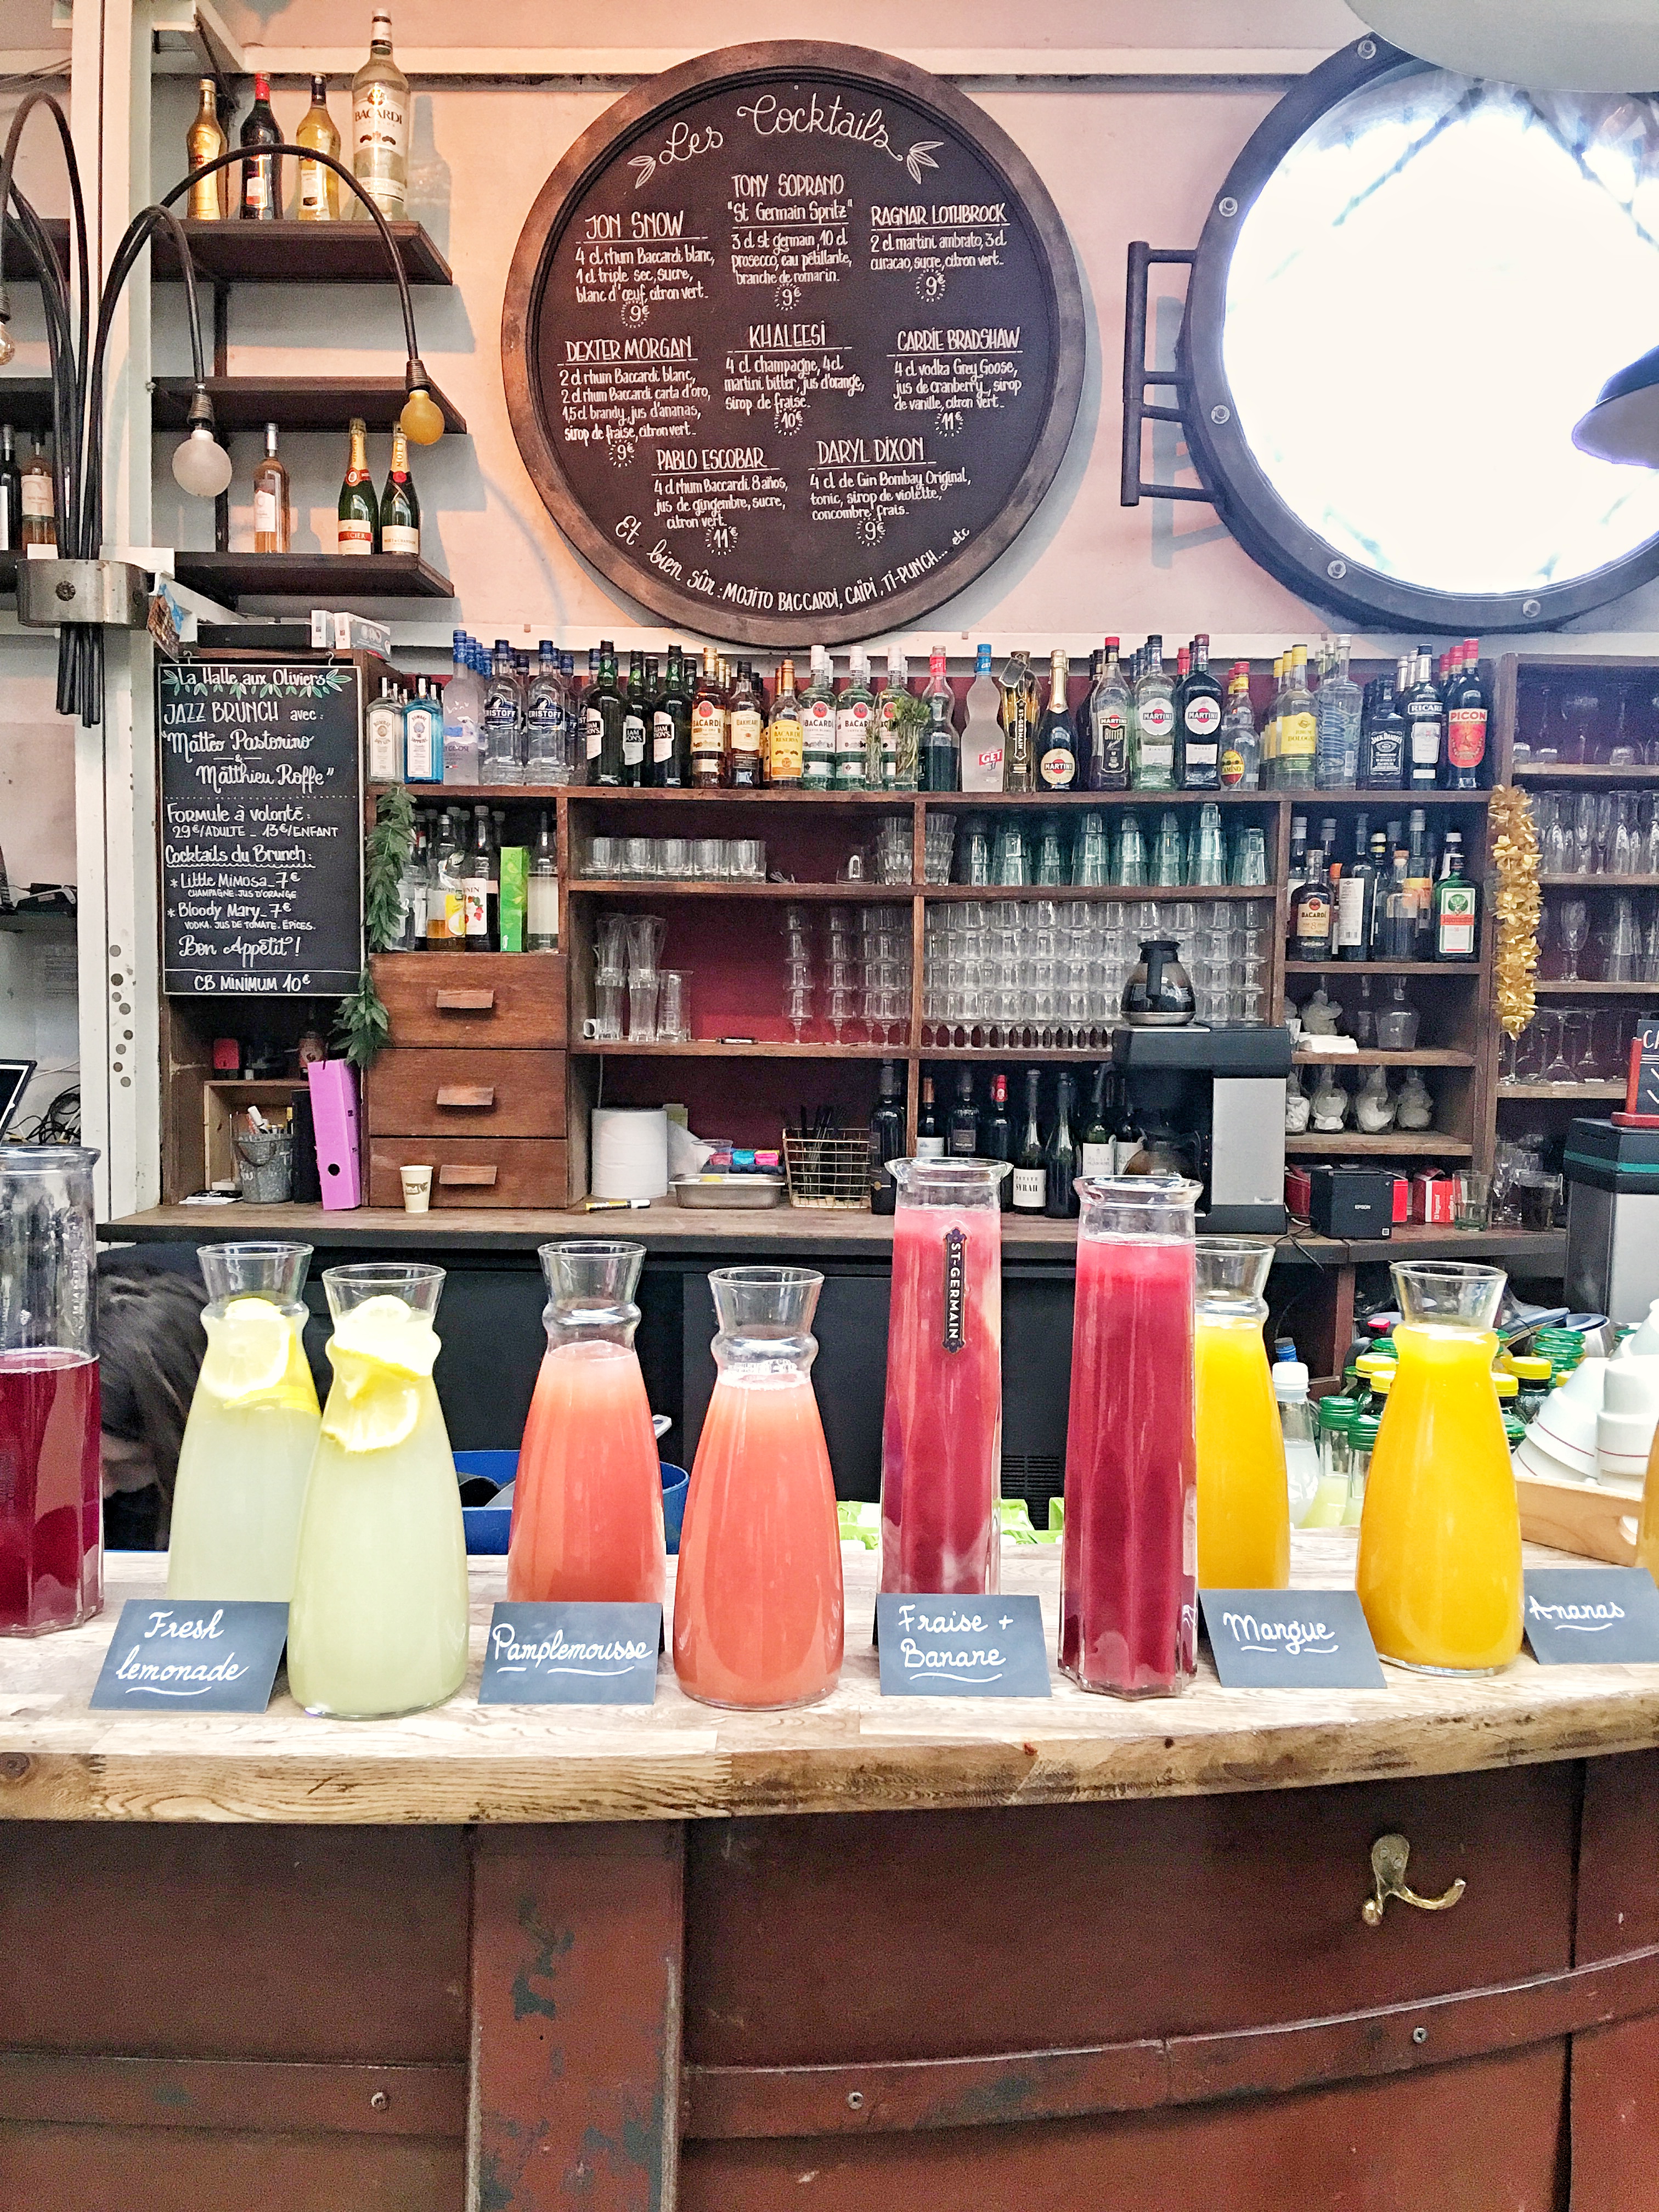 Beverage station at La Bellevilloise